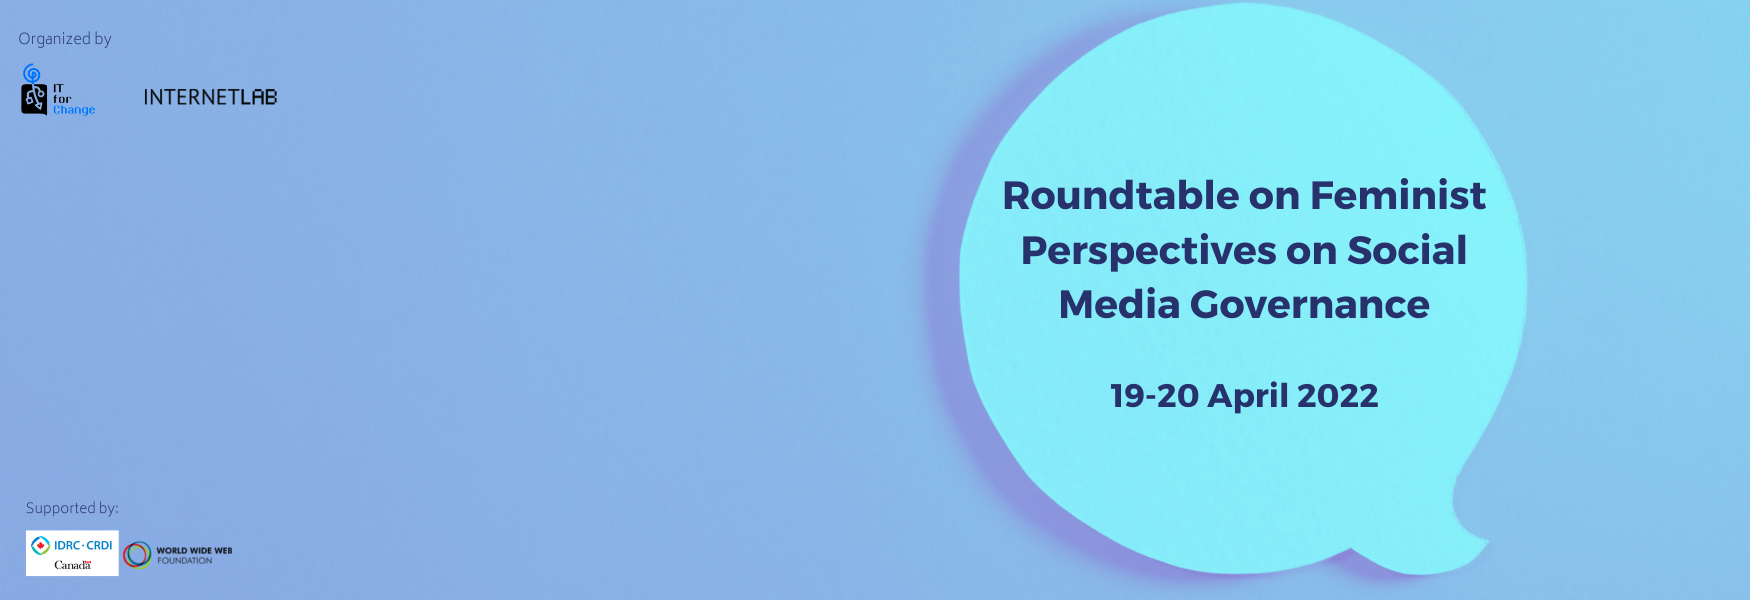 Roundtable on Feminist Perspectives on Social Media Governance 